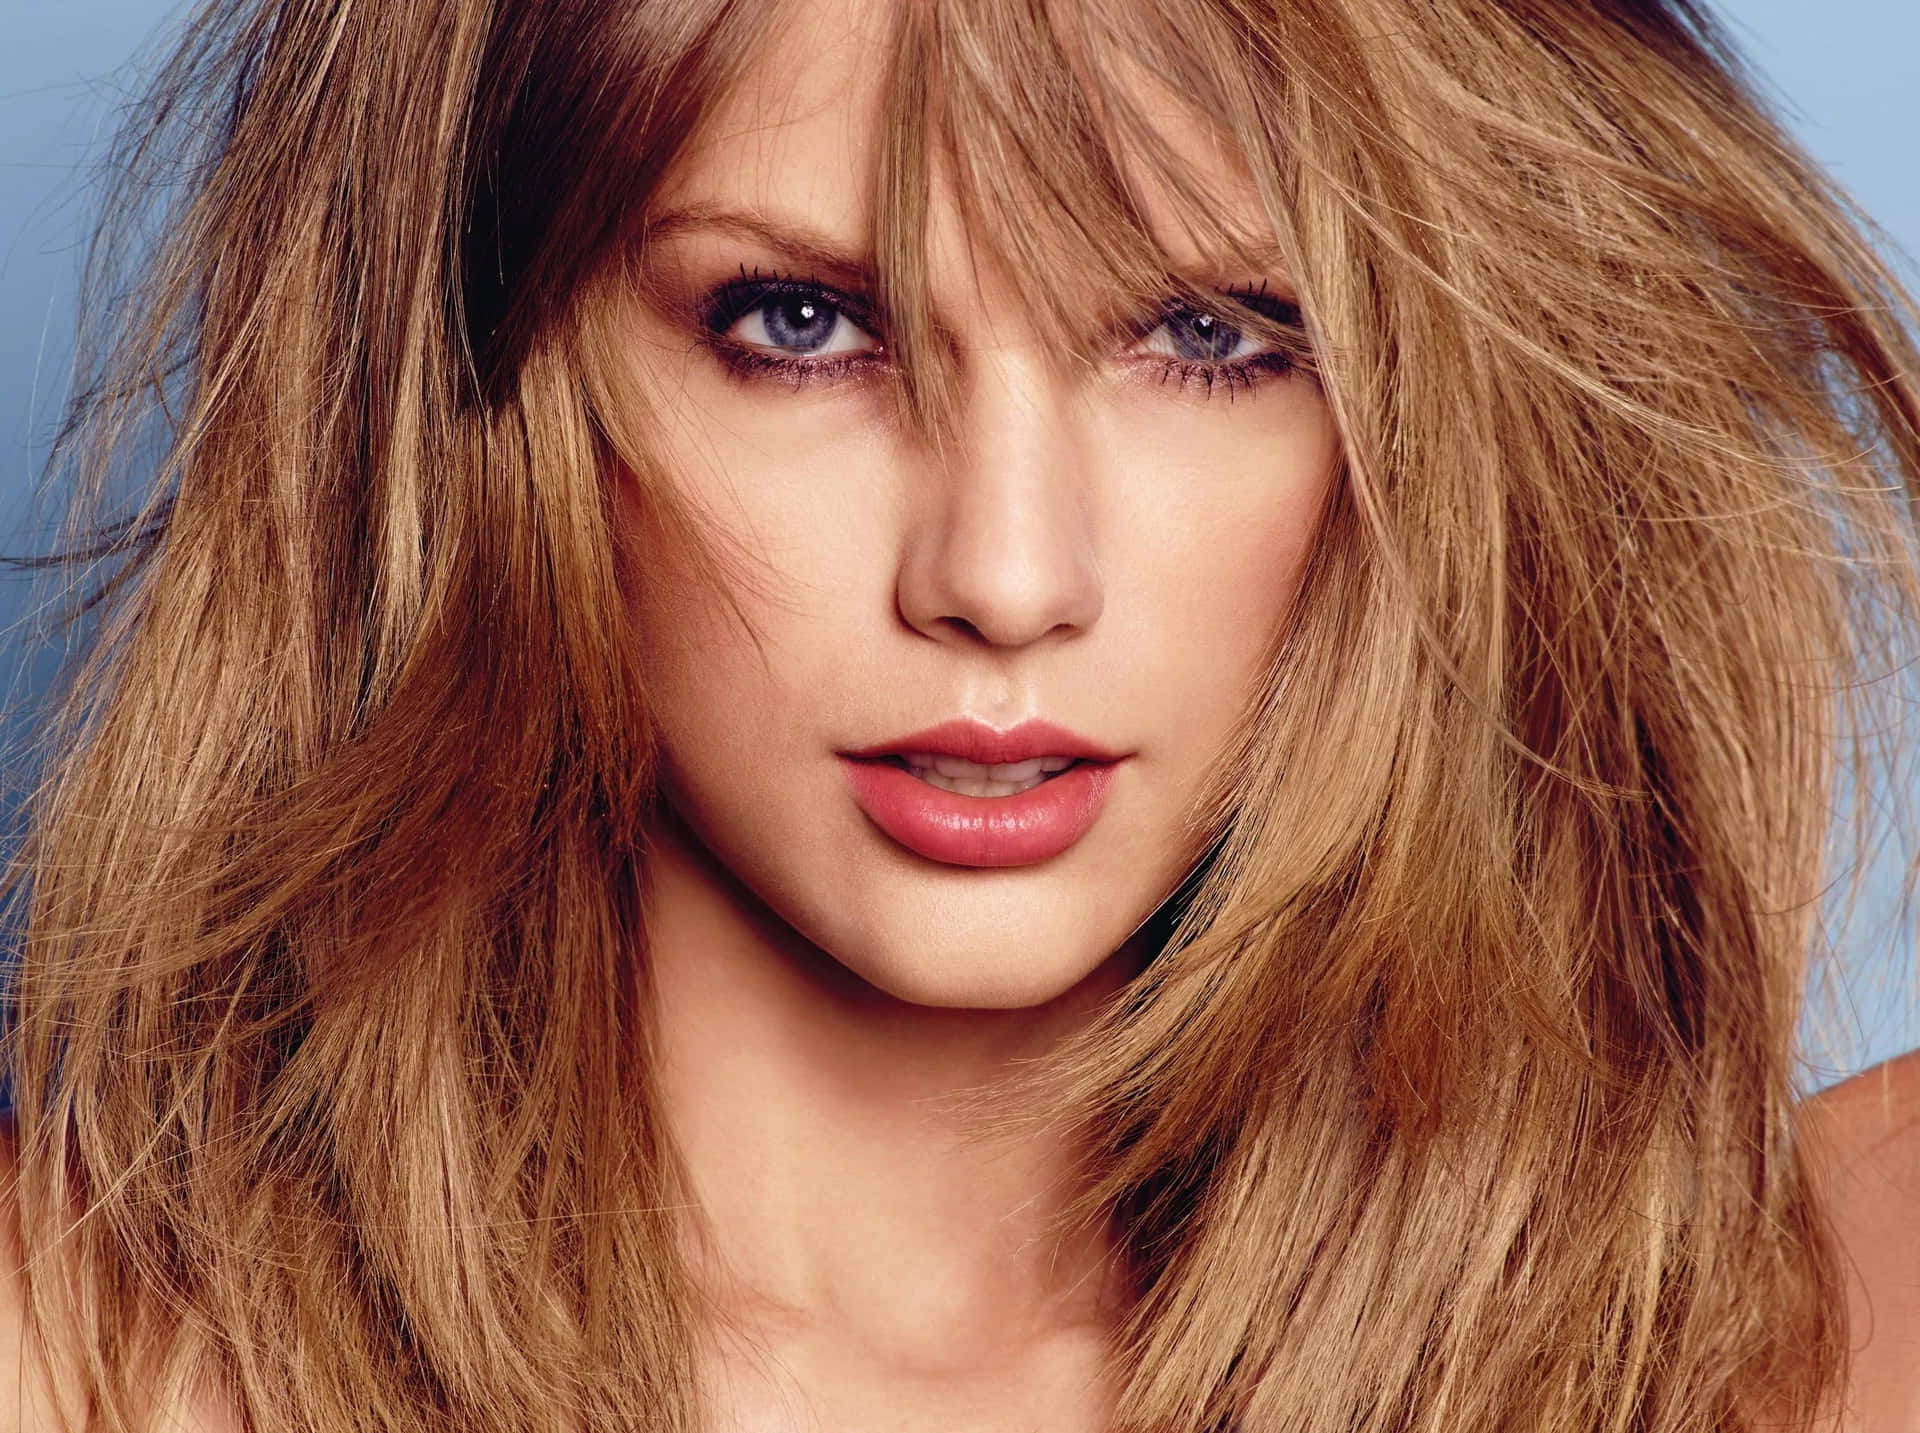 Hintergrundbildvon Taylor Swift Mit Verwuscheltem Haar